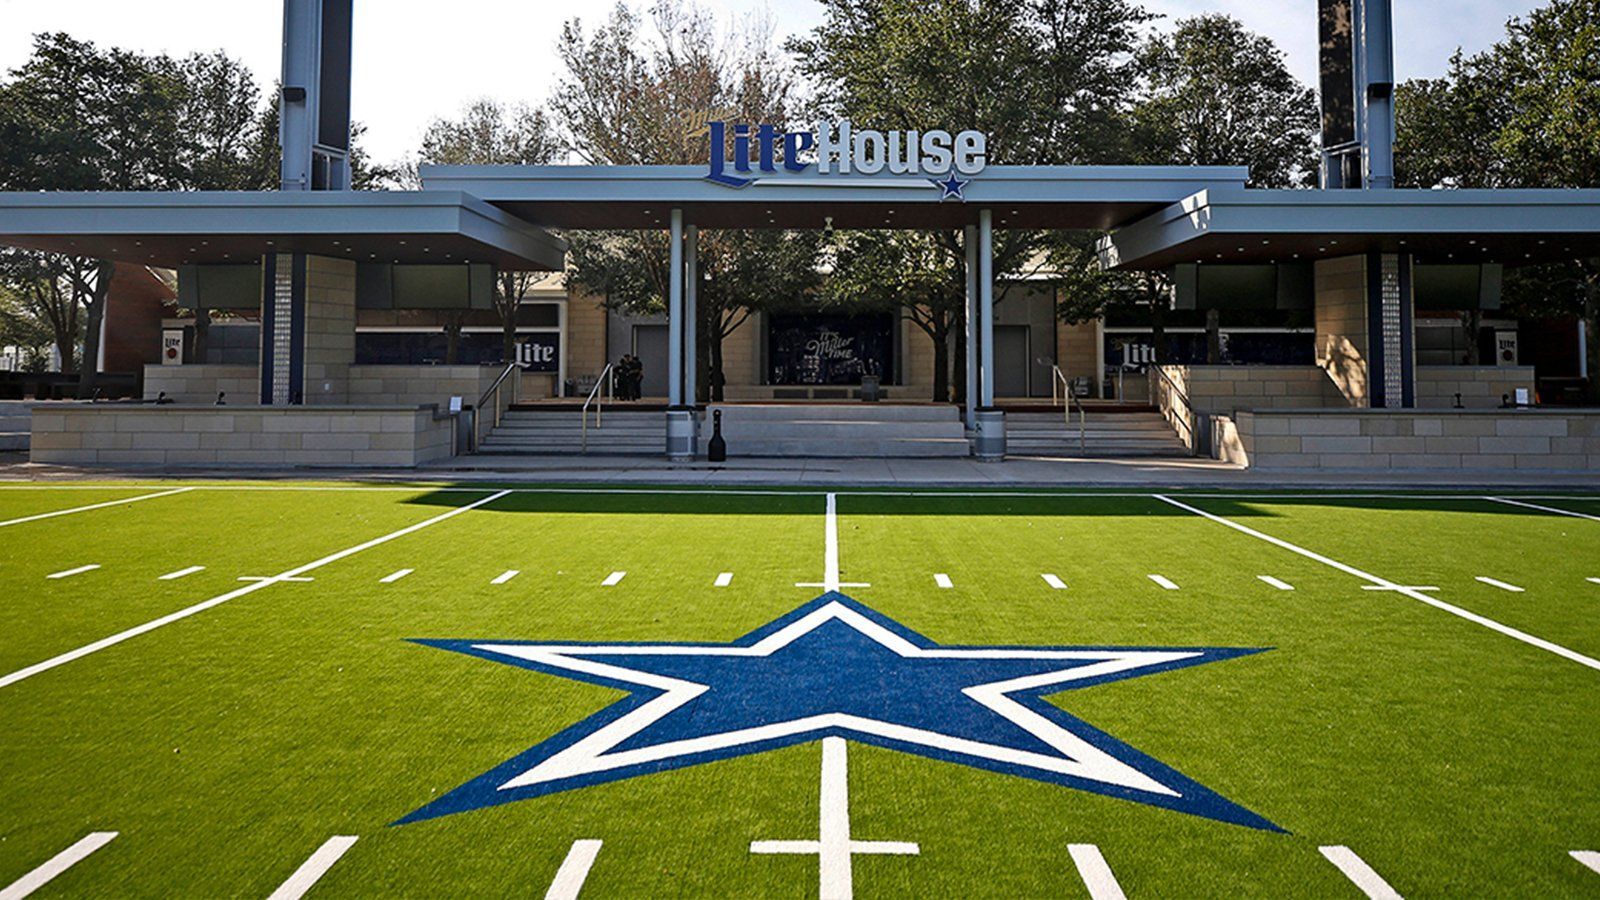 Dallas Cowboys Miller Lite sponsorship case study